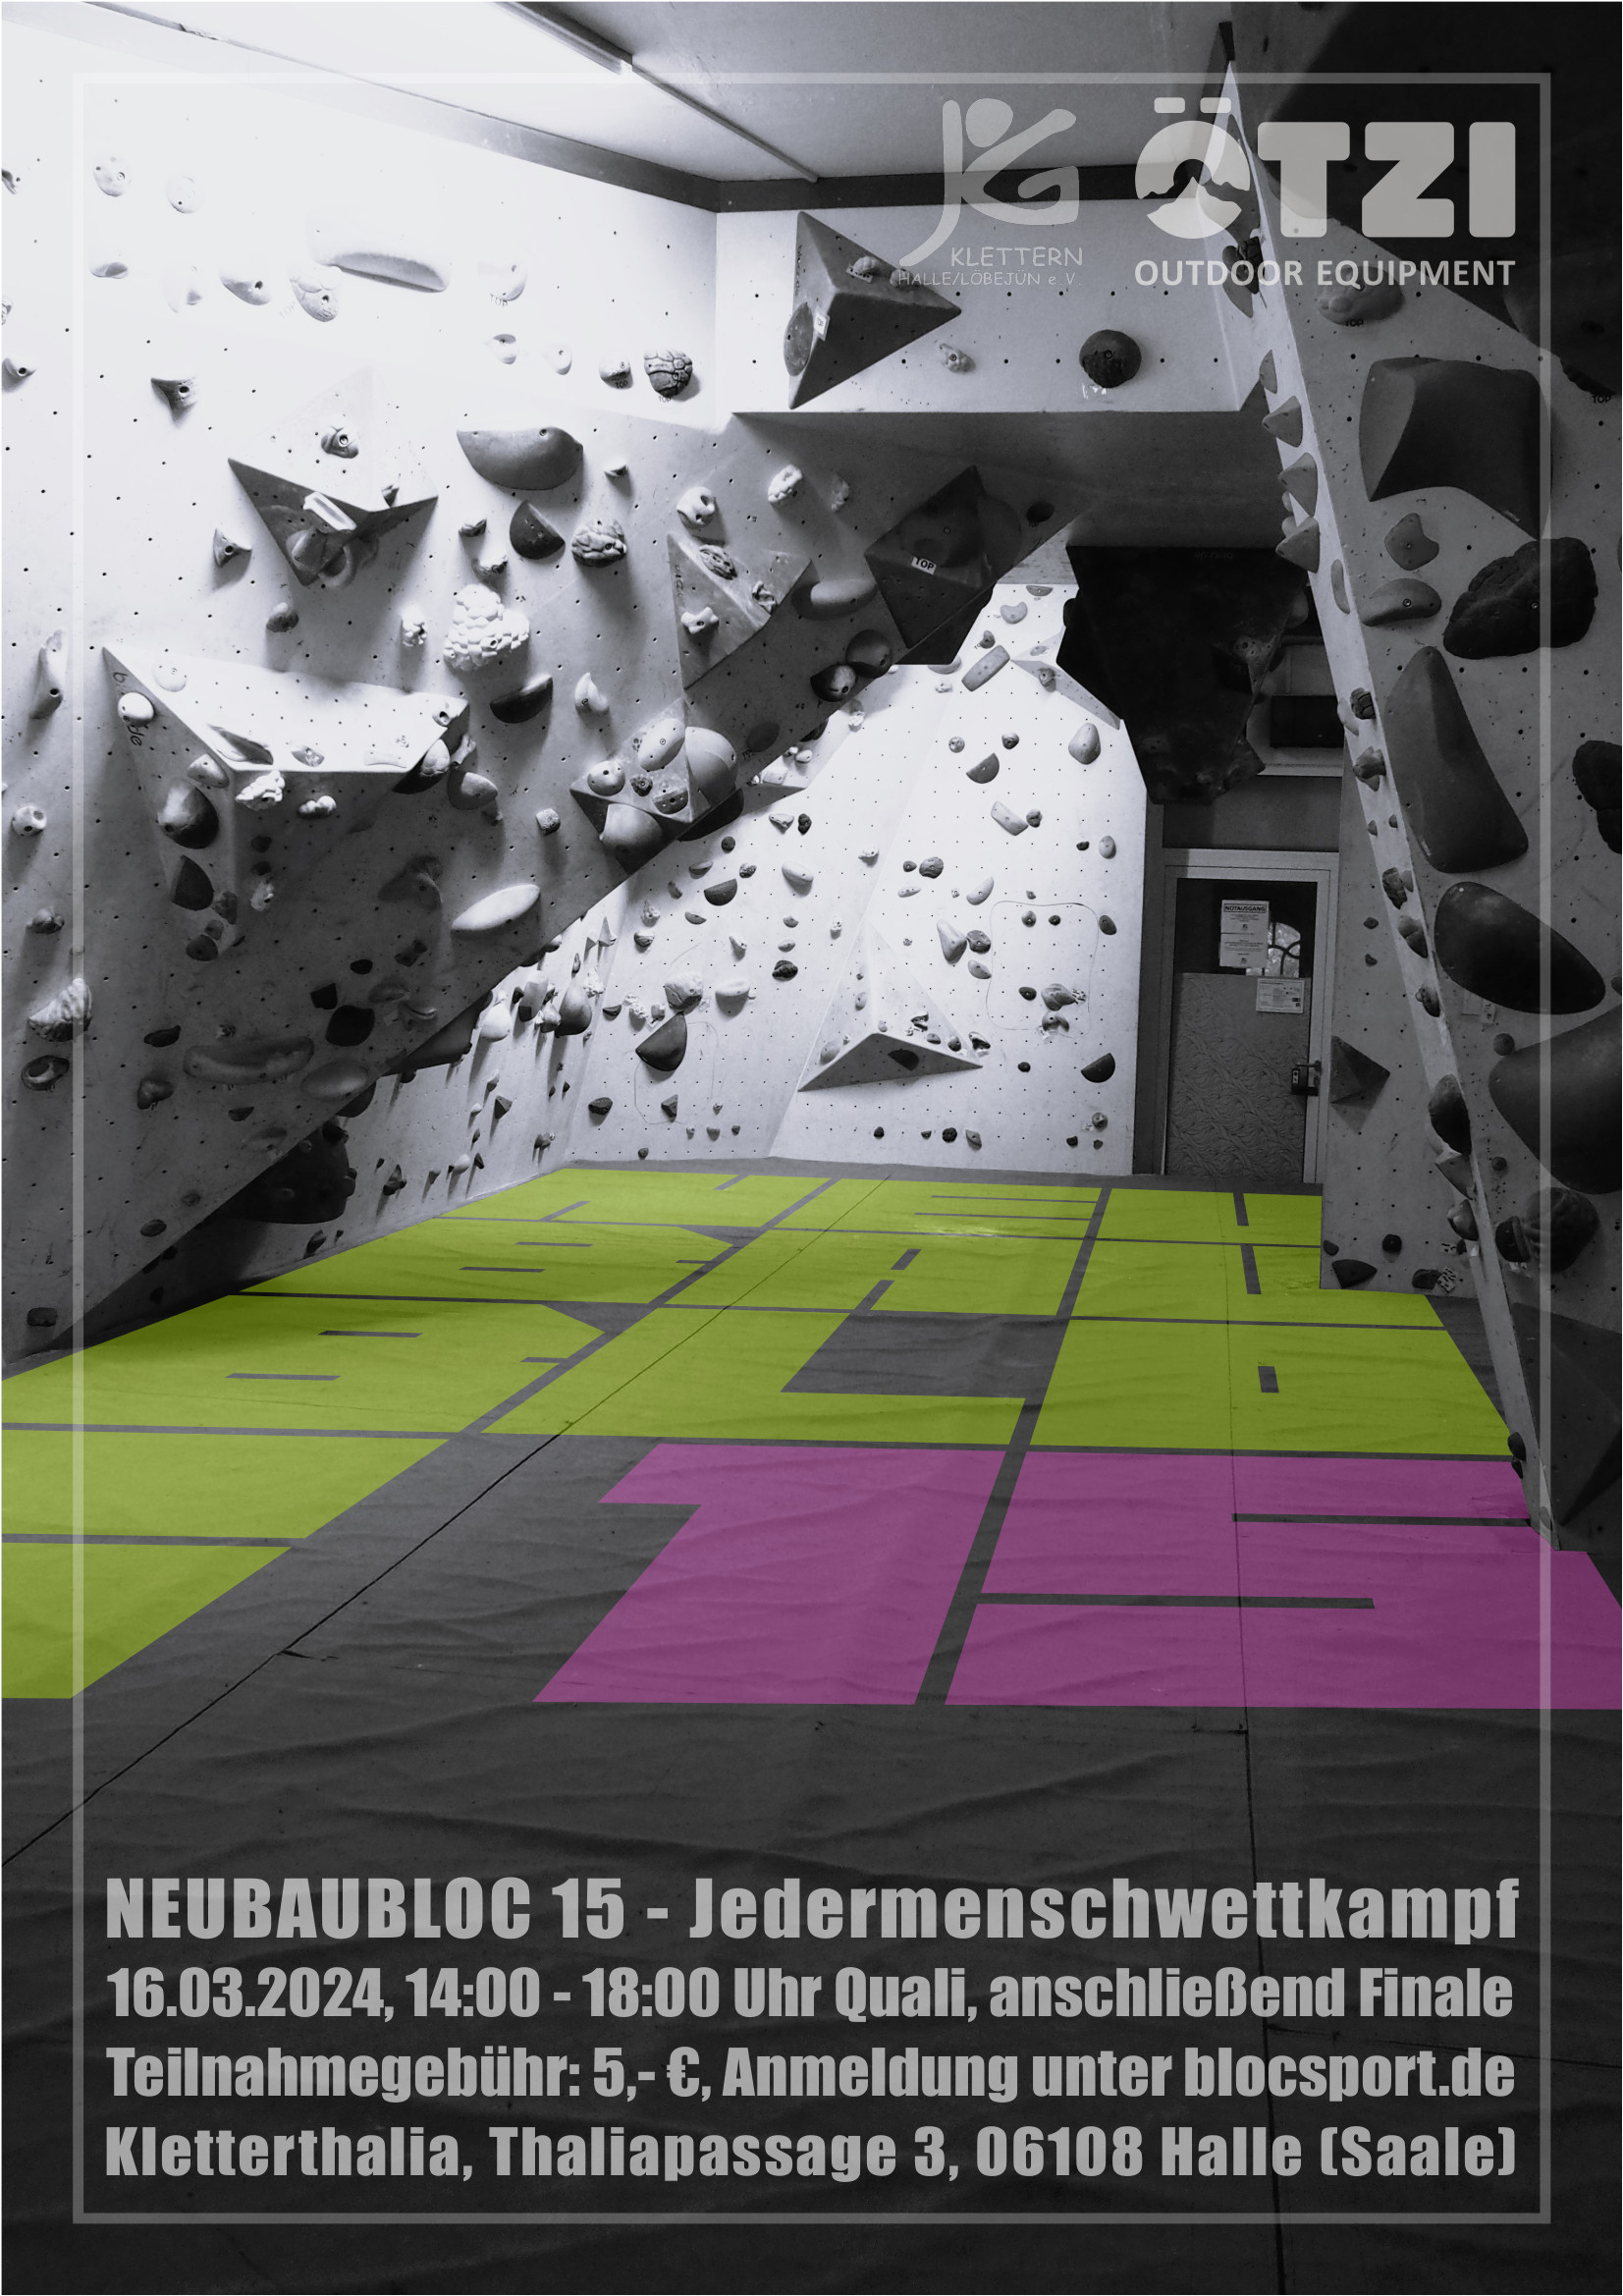 Poster for Neubaubloc 15